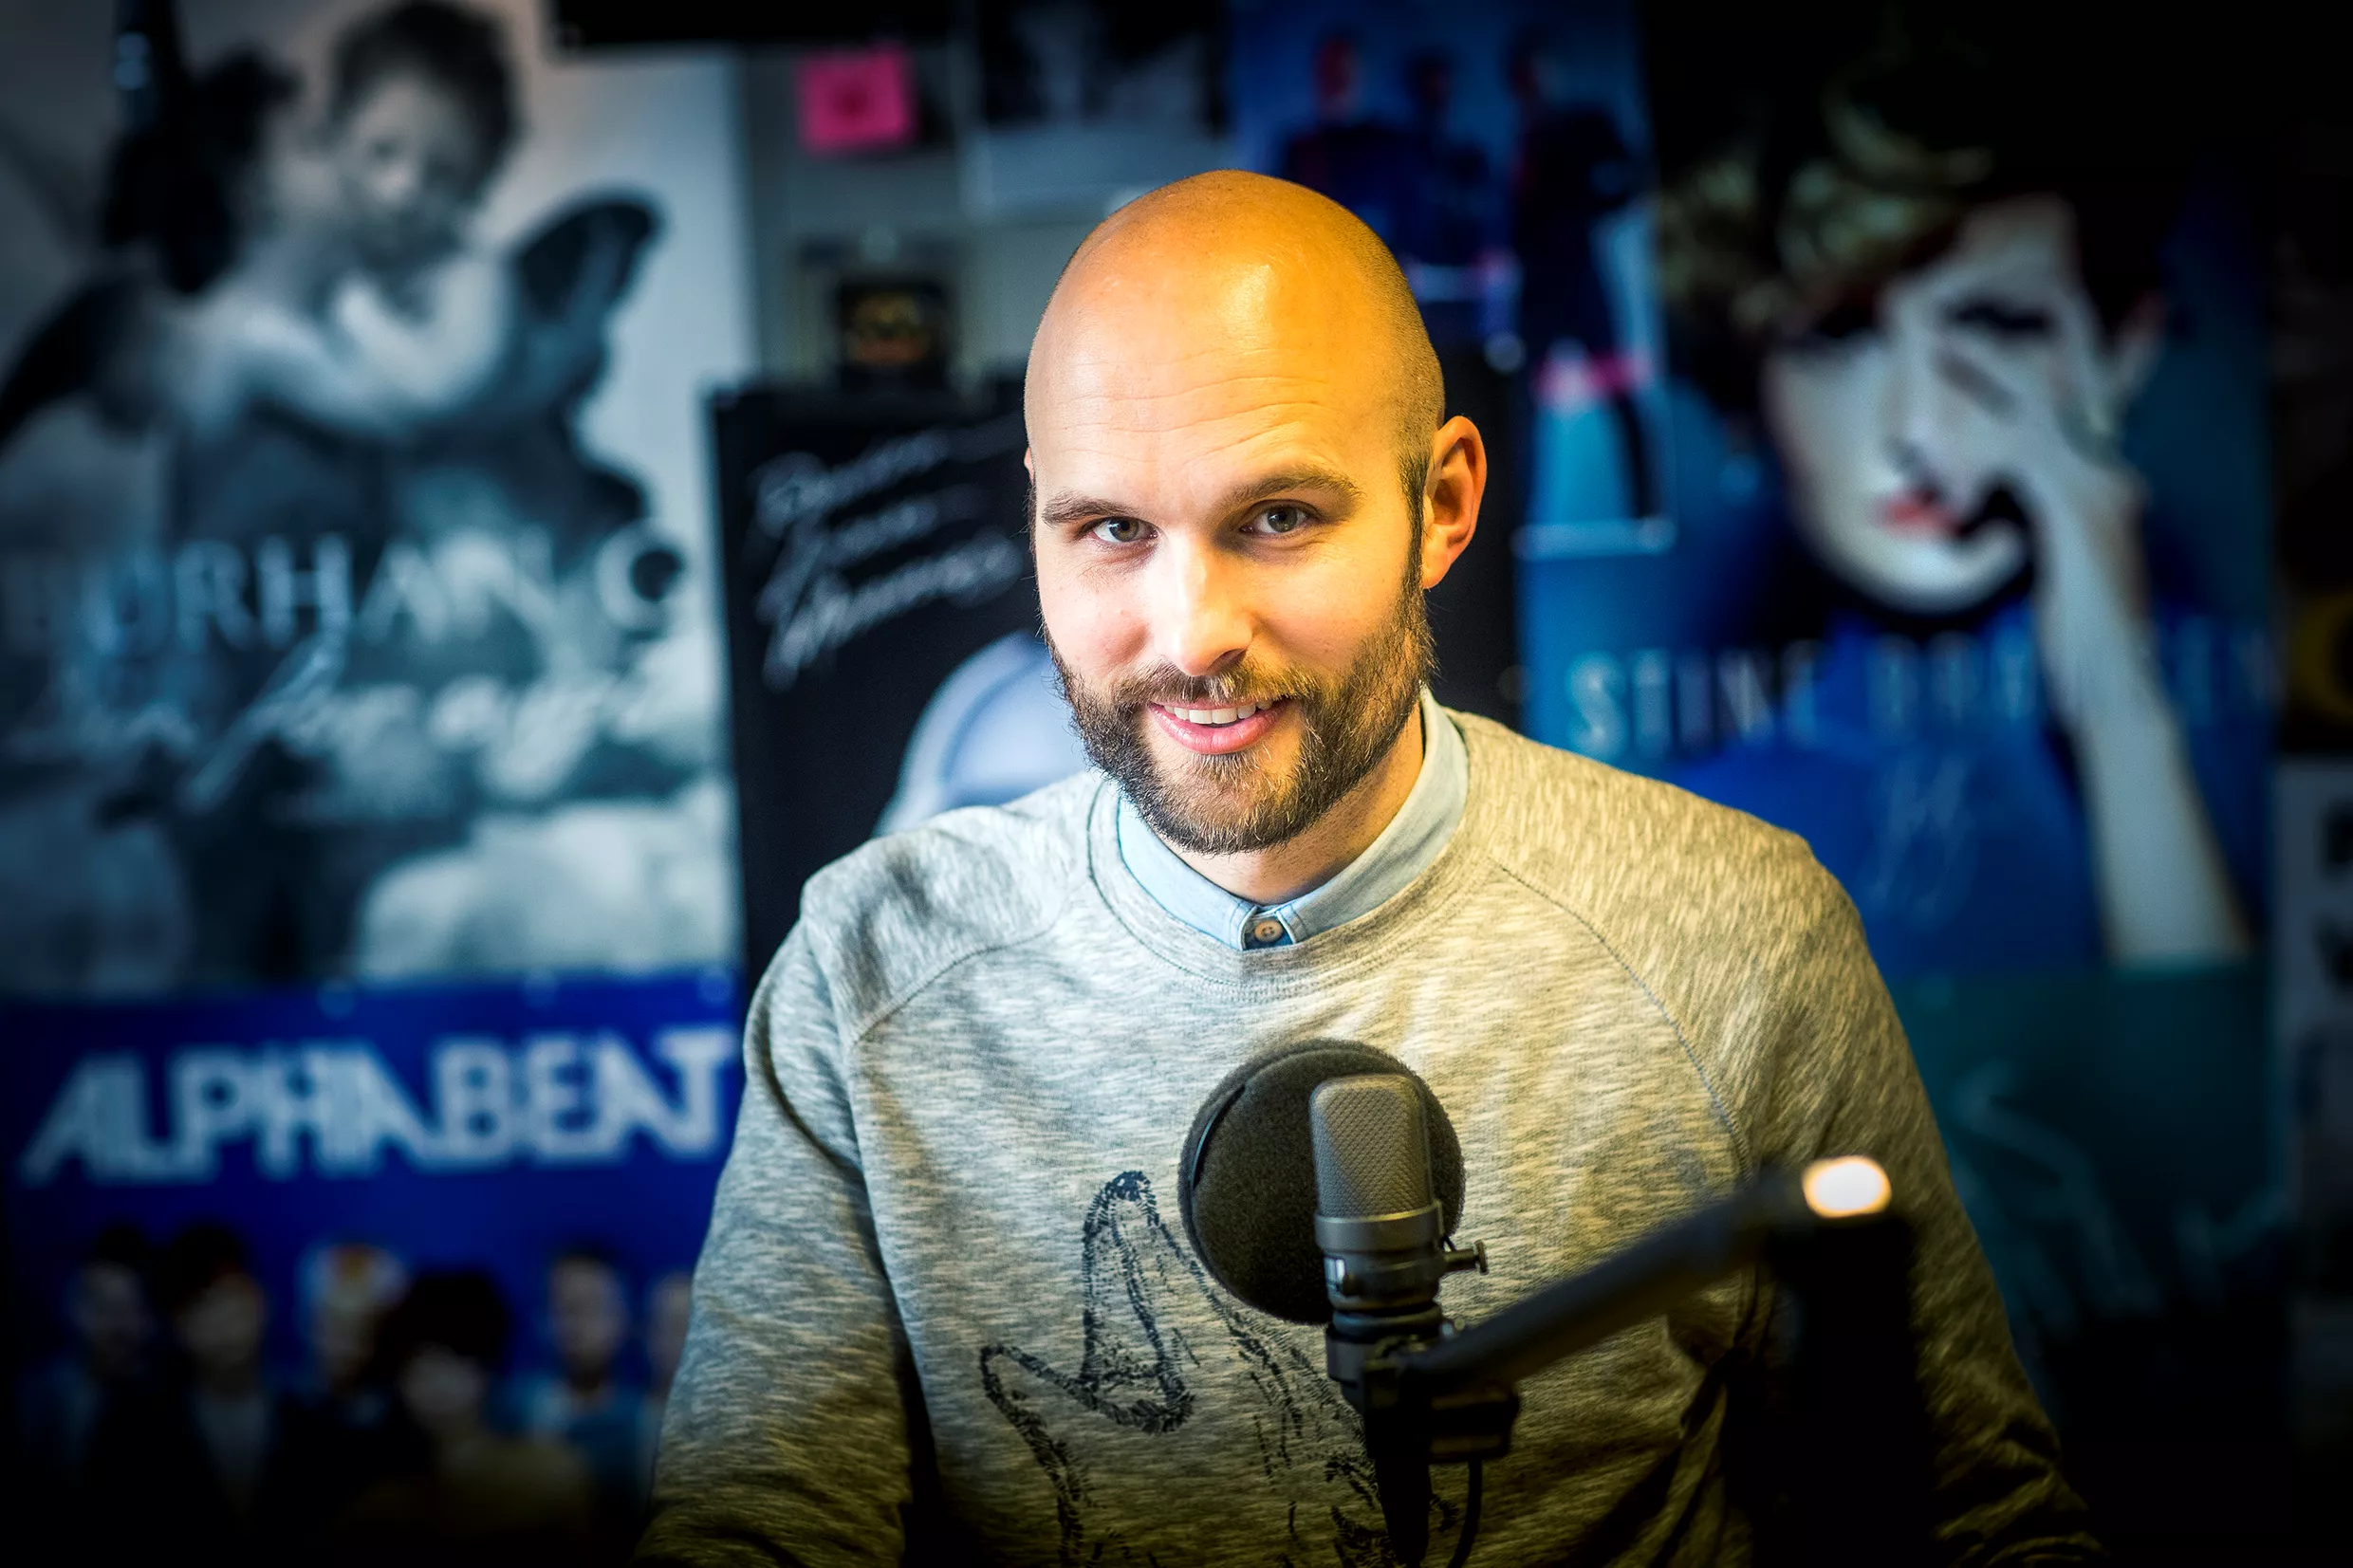 P3’s nye musikredaktør Mathias Buch Jensen: – Vi ved ikke alt, og vi lytter altid til saglig kritik